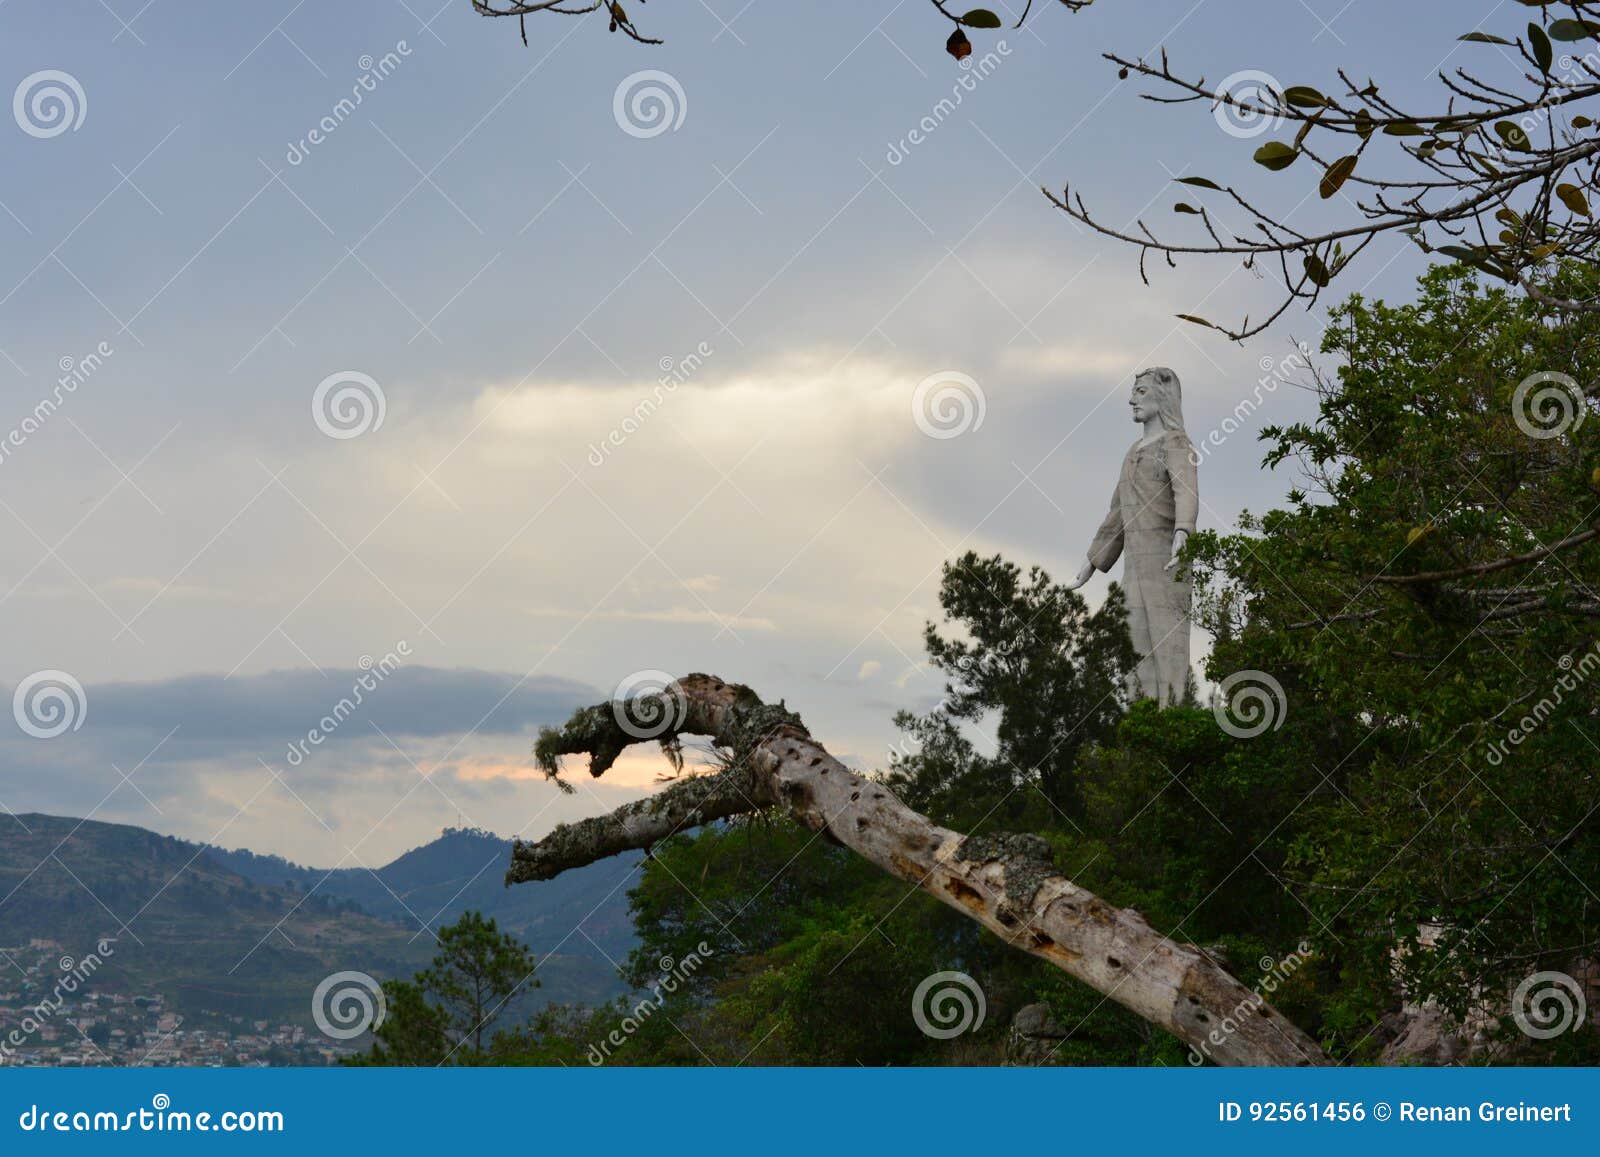 cristo del picacho statue in tegucigalpa, honduras